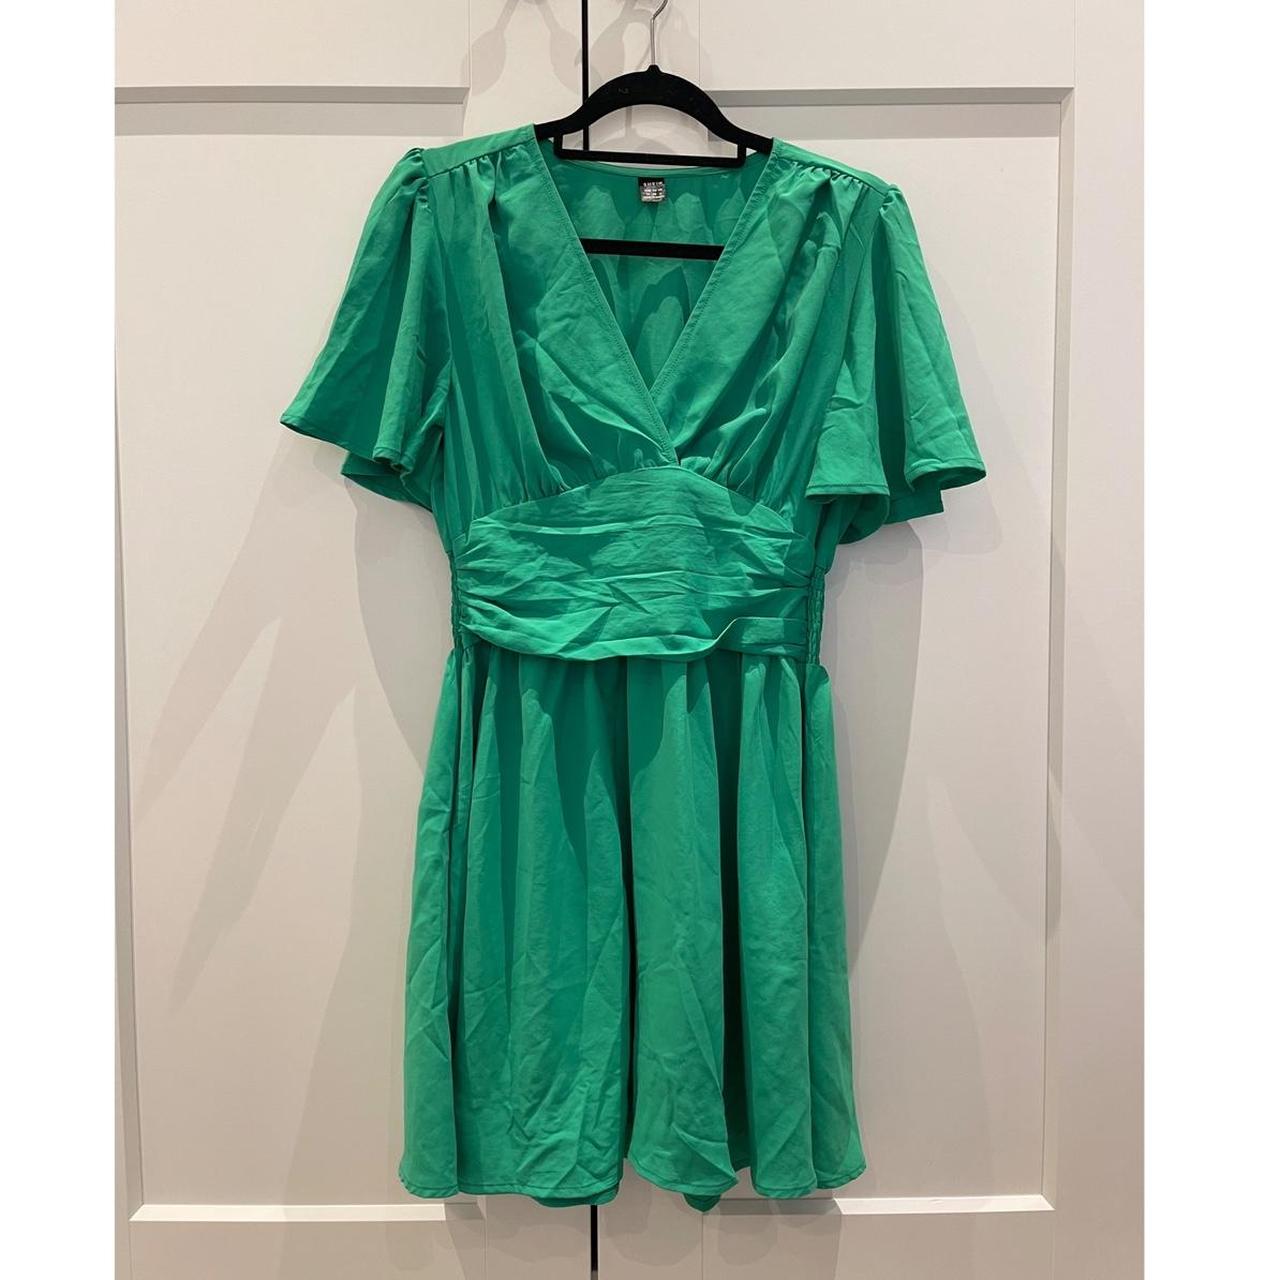 Shein Green Dress Size - M Great condition, worn... - Depop